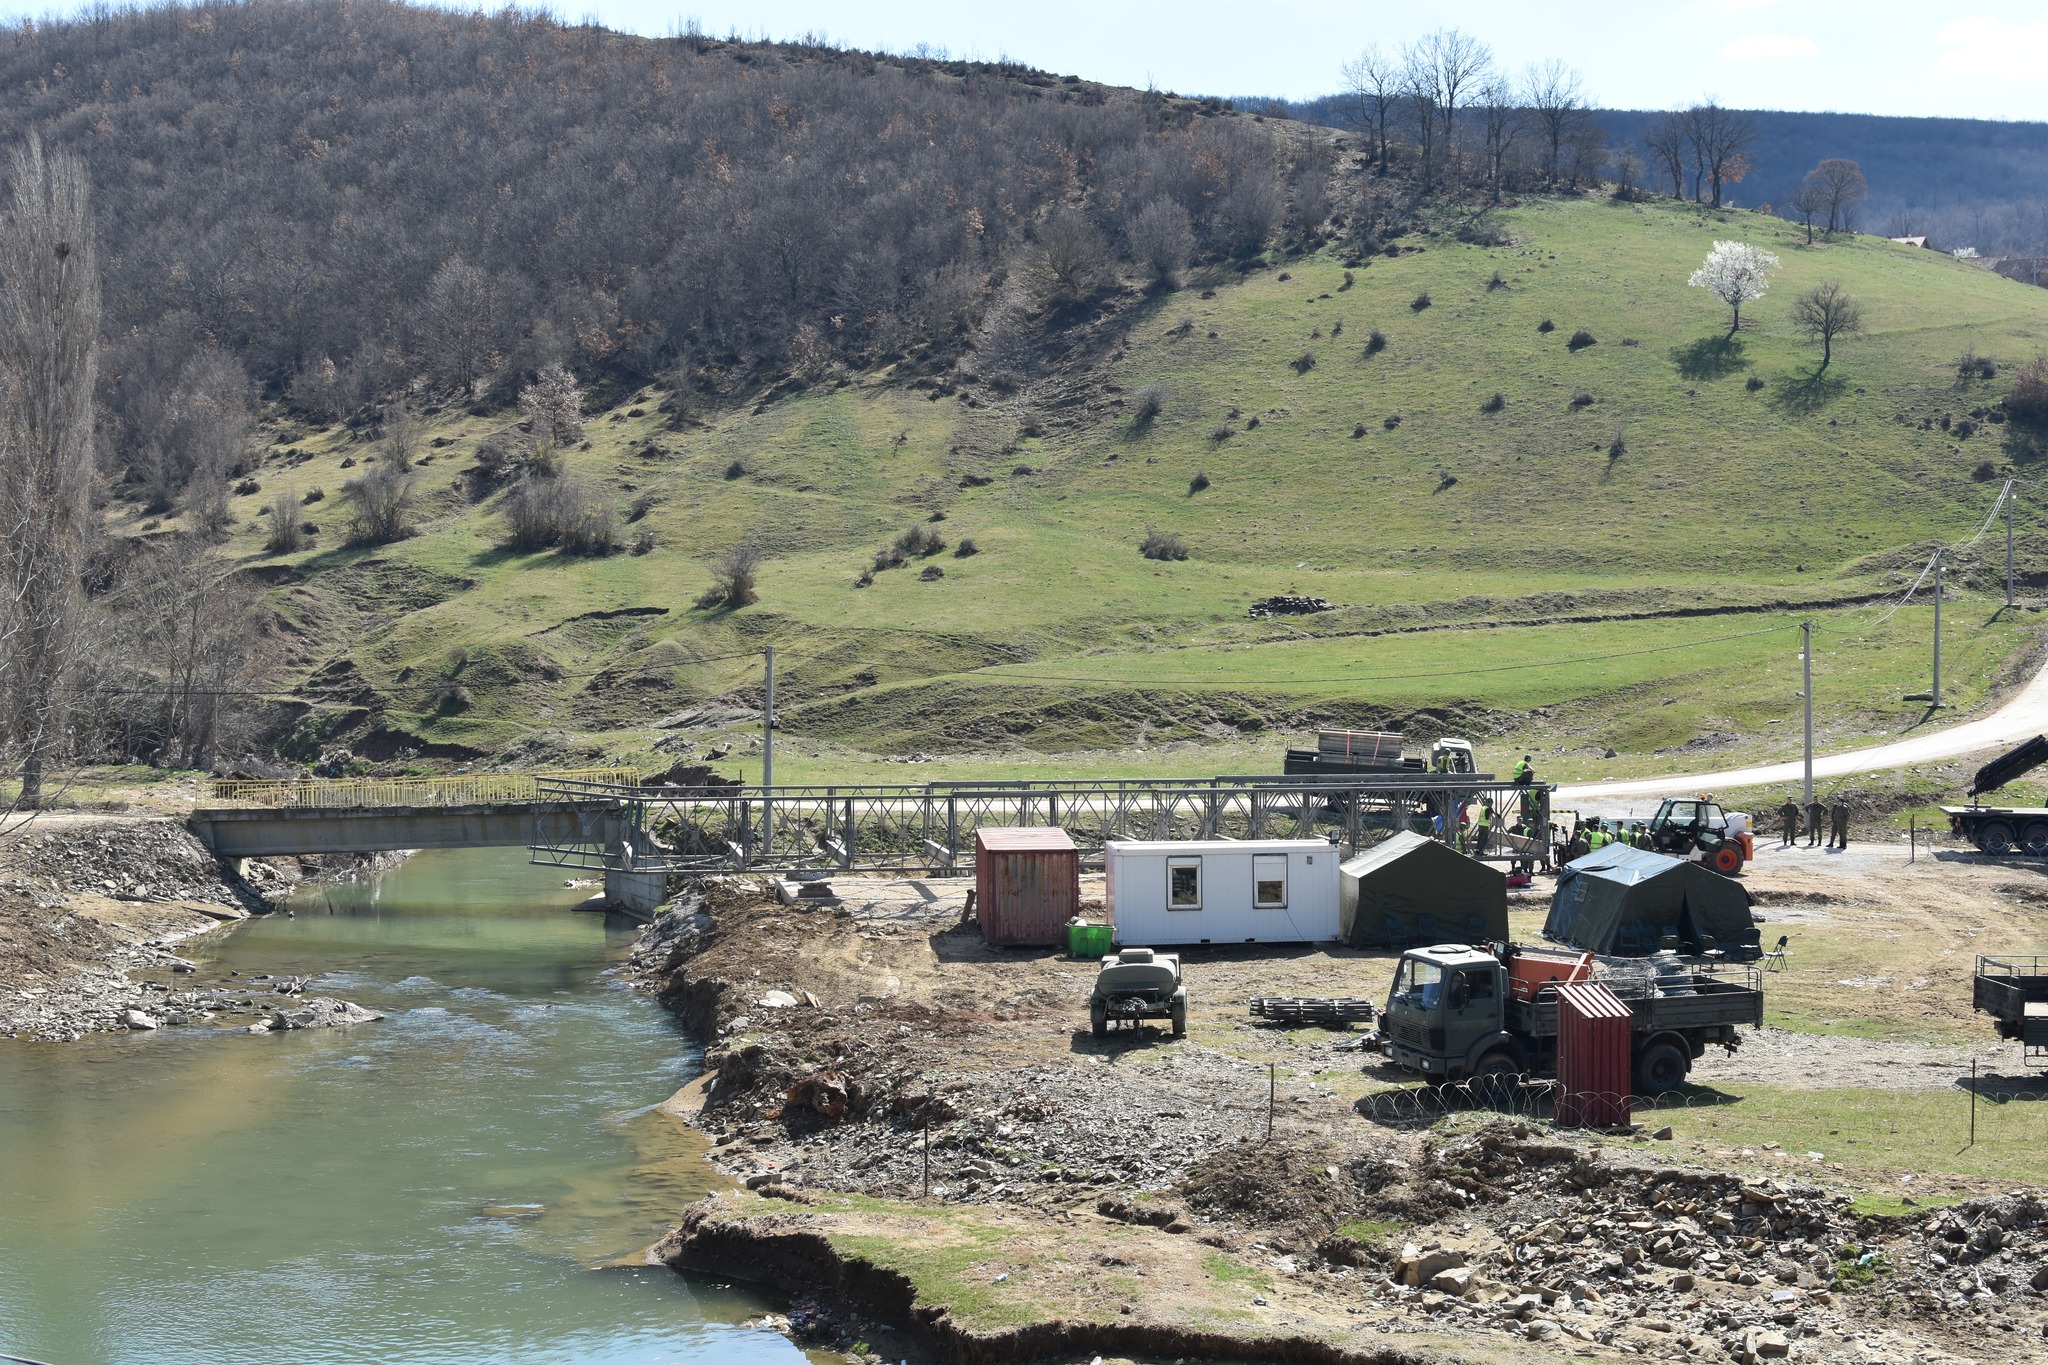 Ekipet e FSK-së nisin ndërtimin e urës që u prish gjatë vërshimeve në Skenderaj